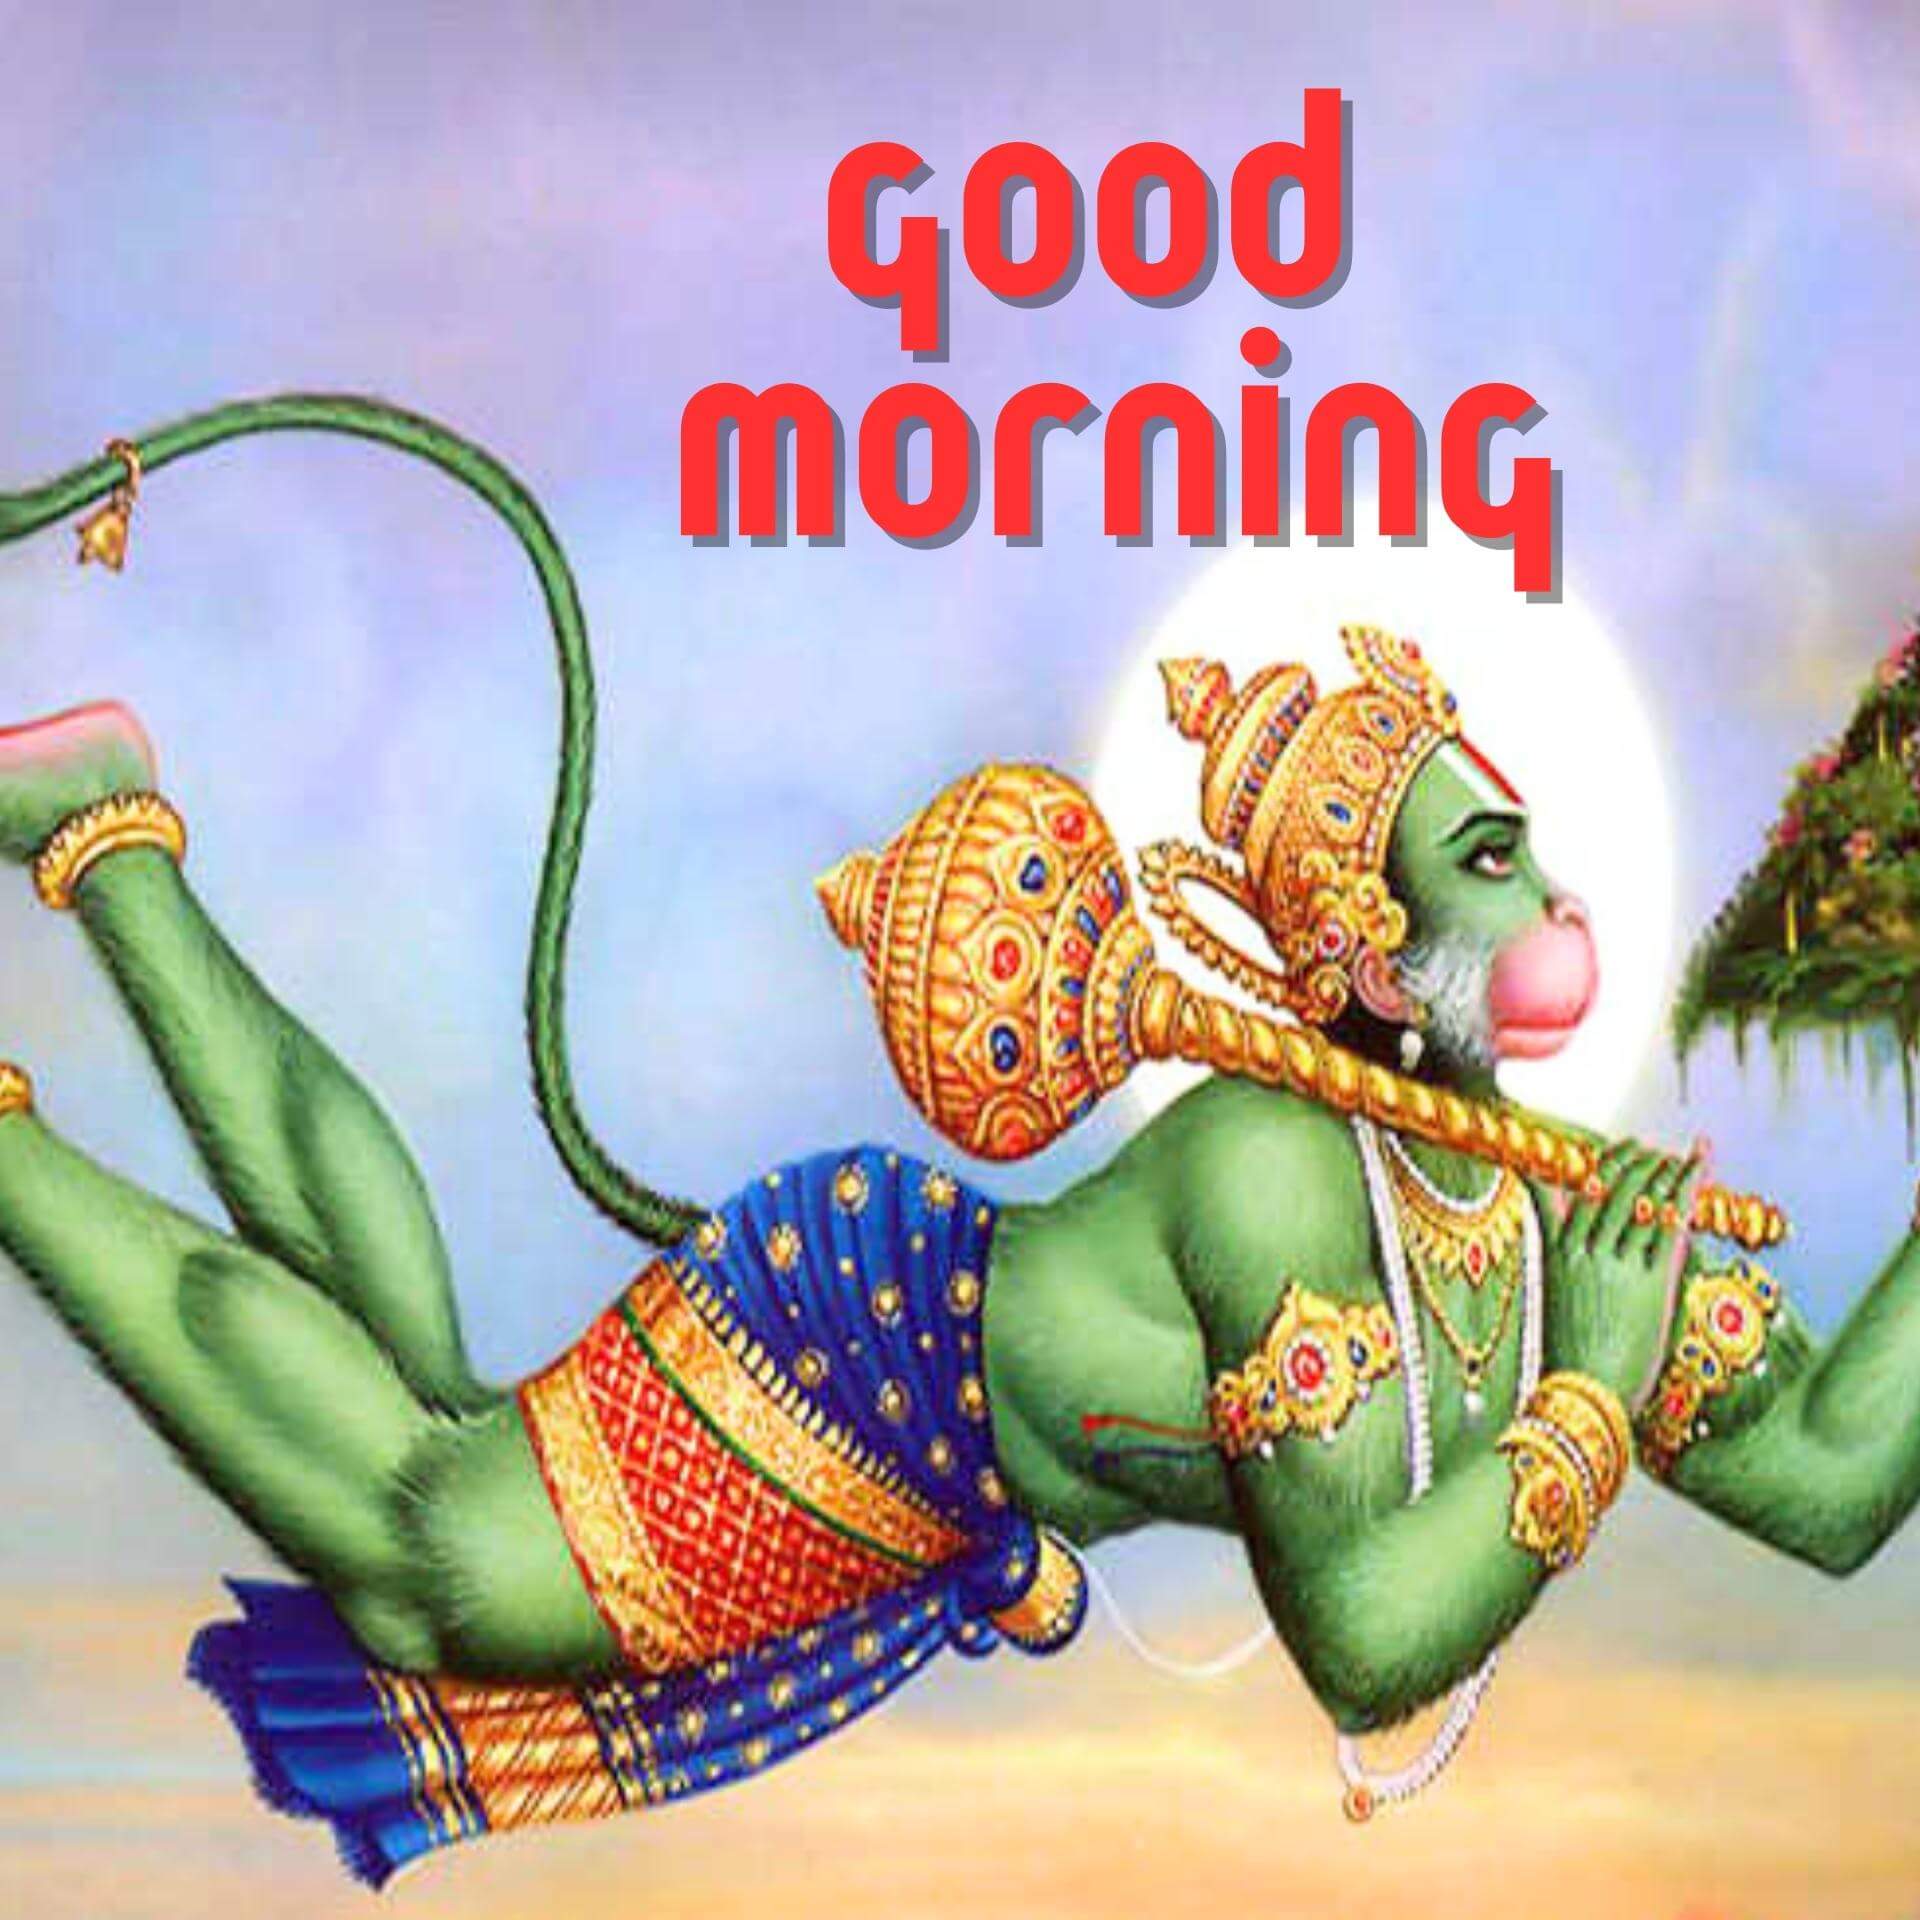 Hanuman Ji Good Morning Images Free Download